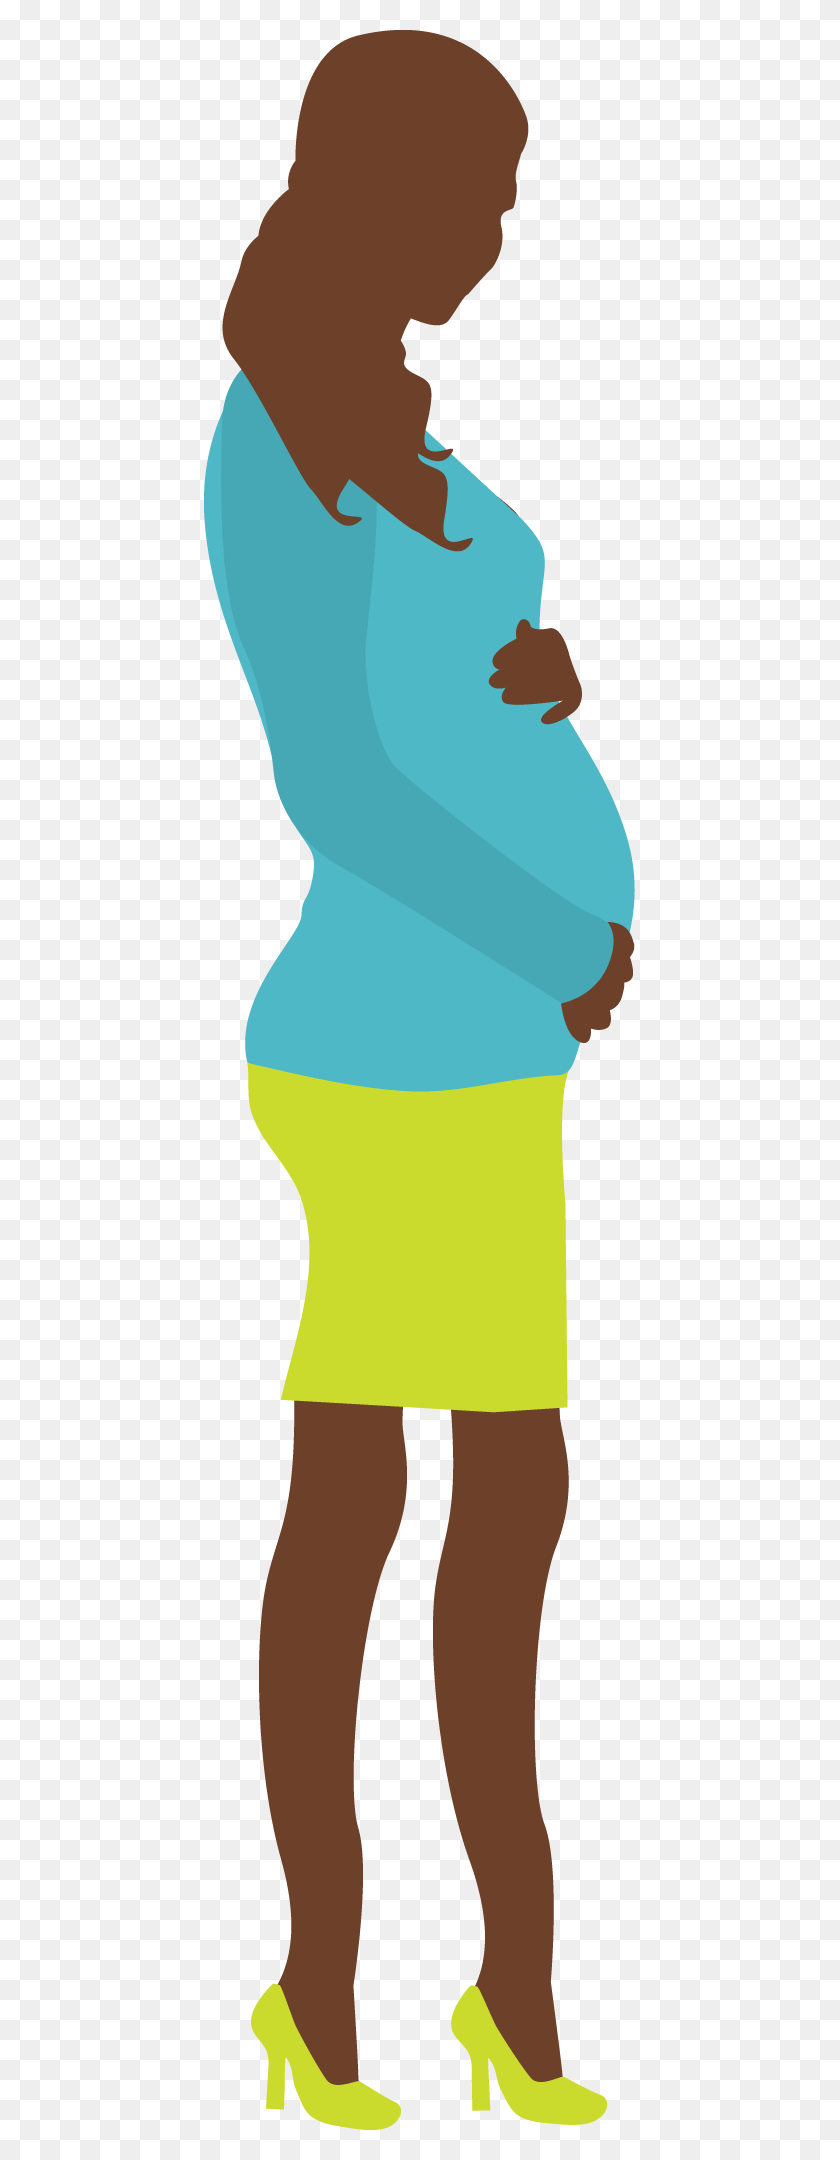 431x2100 Impresionante Mejor Imagen De Imágenes Prediseñadas De Embarazadas De Imágenes Prediseñadas De Ropa Para Niños - Imágenes Prediseñadas De Embarazadas